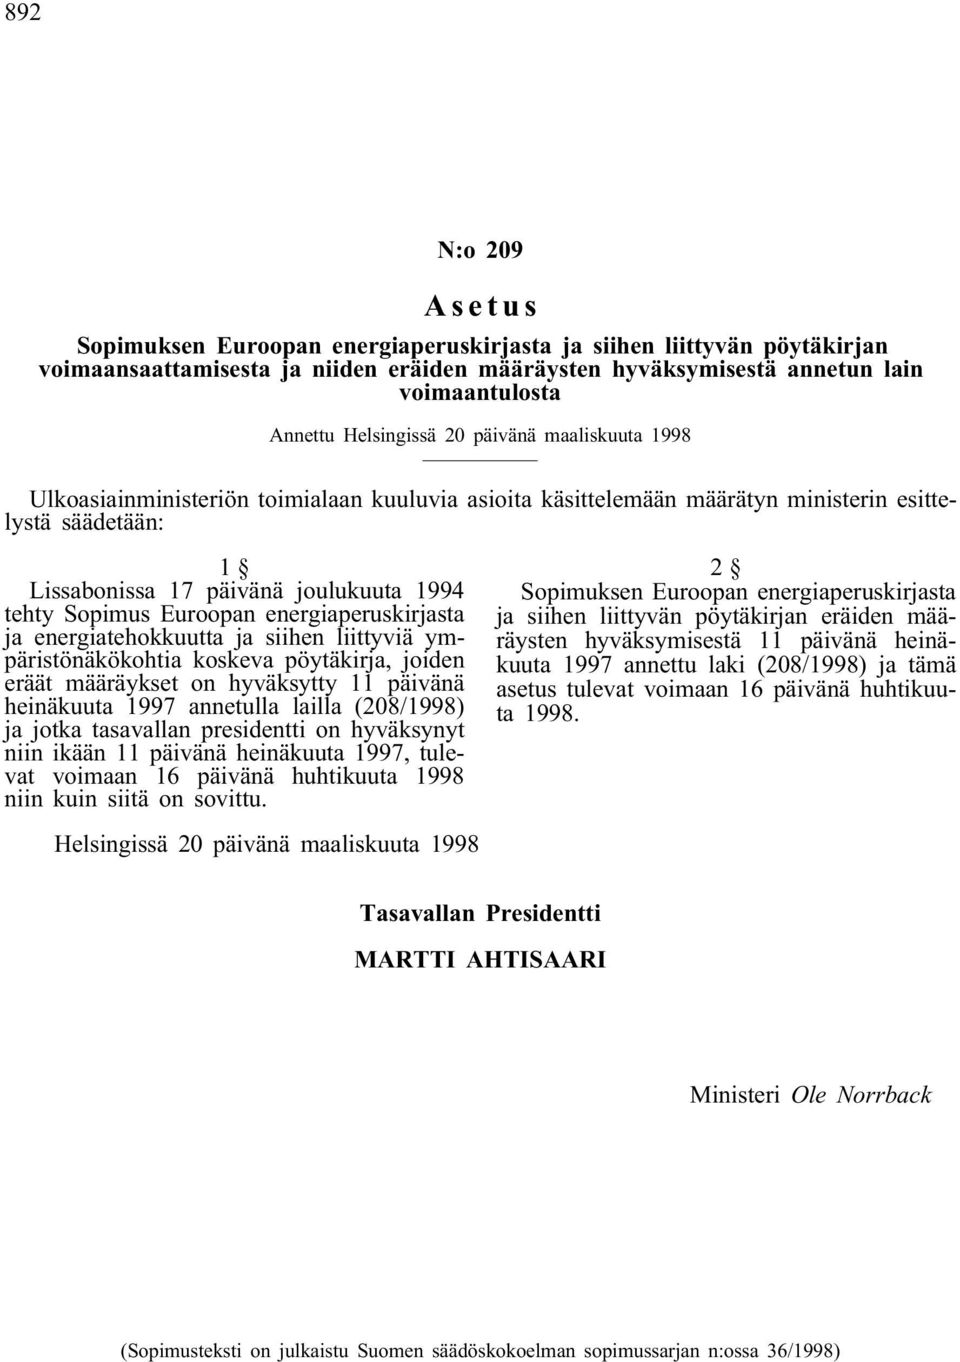 Sopimus Euroopan energiaperuskirjasta ja energiatehokkuutta ja siihen liittyviä ympäristönäkökohtia koskeva pöytäkirja, joiden eräät määräykset on hyväksytty 11 päivänä heinäkuuta 1997 annetulla